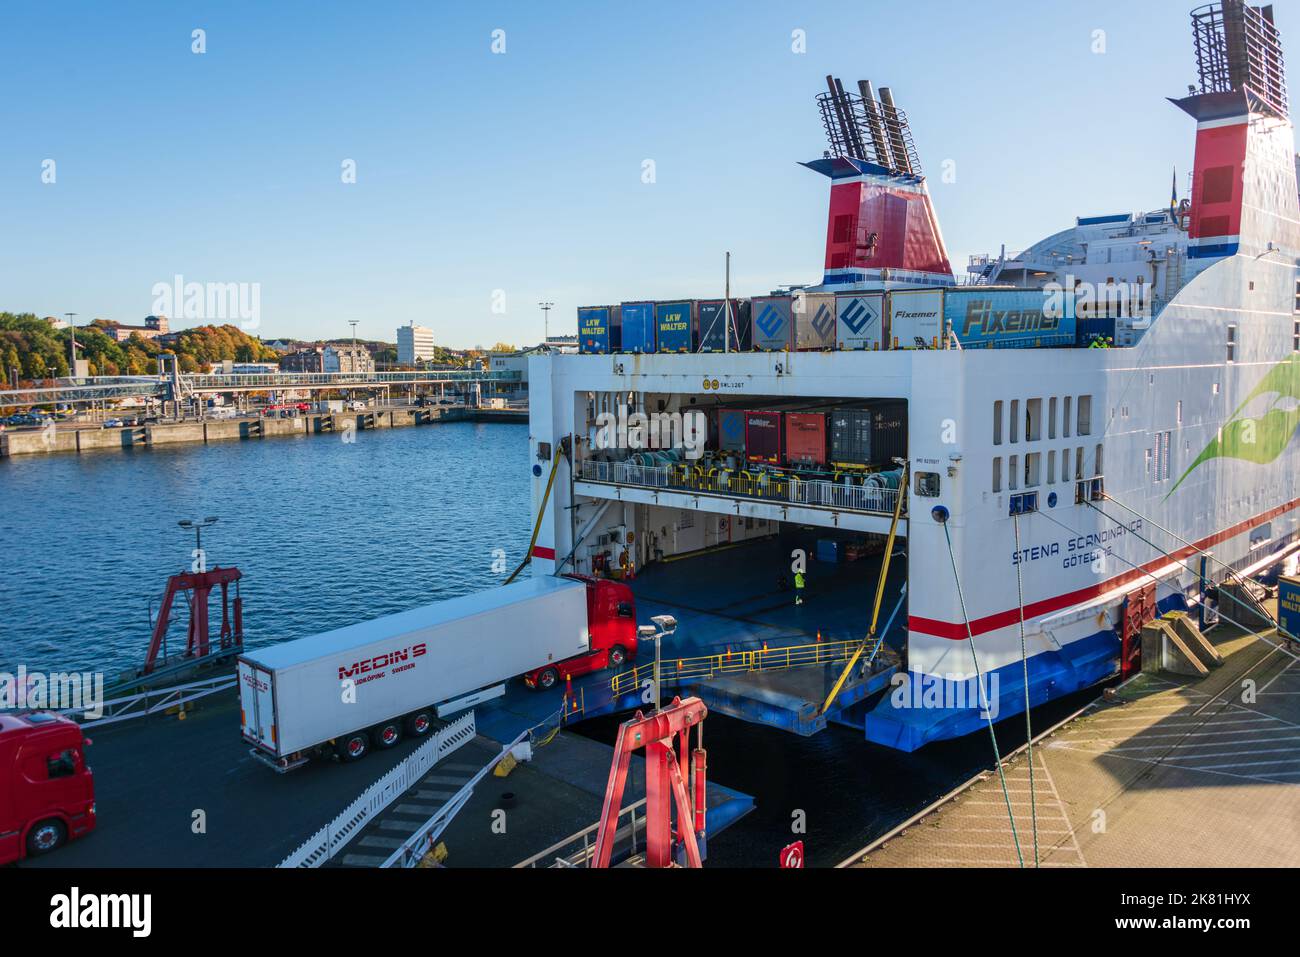 Hafen von Kiel am Stena Terminal, die Schwedenfähre wirs beladen Stock Photo